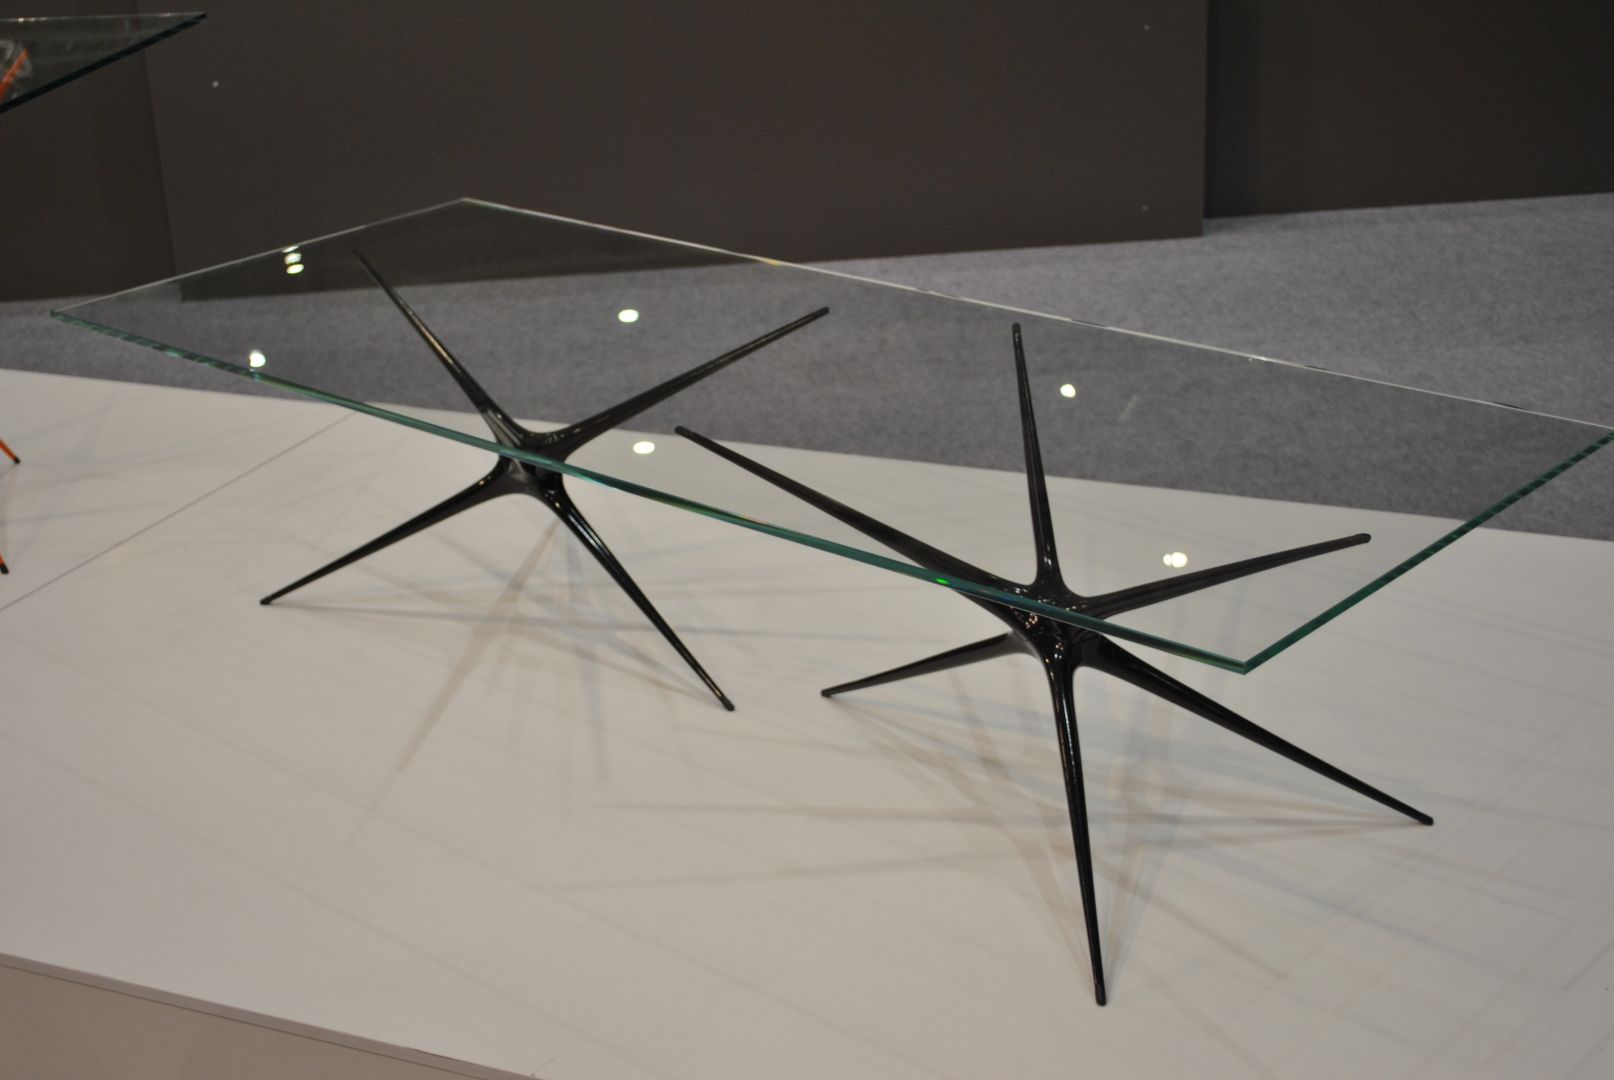 Supernova - stolik zaprojektowany przez Brodiego Neilla, ze szklanym blatem i aluminiowymi nóżkami, zaprezentowany na targach Meble Polska 2014 w Poznaniu  Fot. Piotr Sawczuk